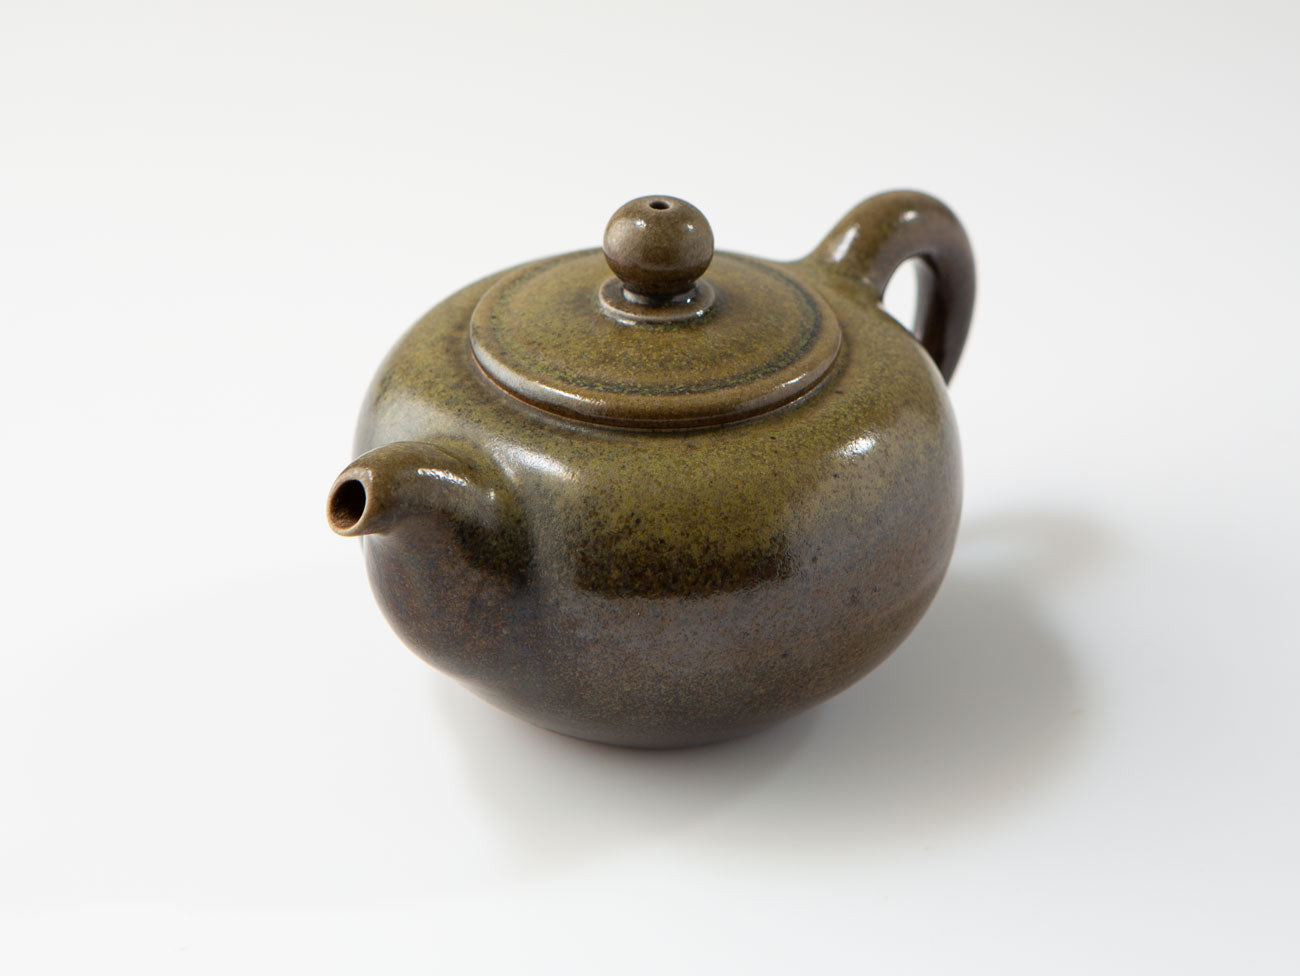 Wood-fired teapot, Botera, Liao Guo Hua